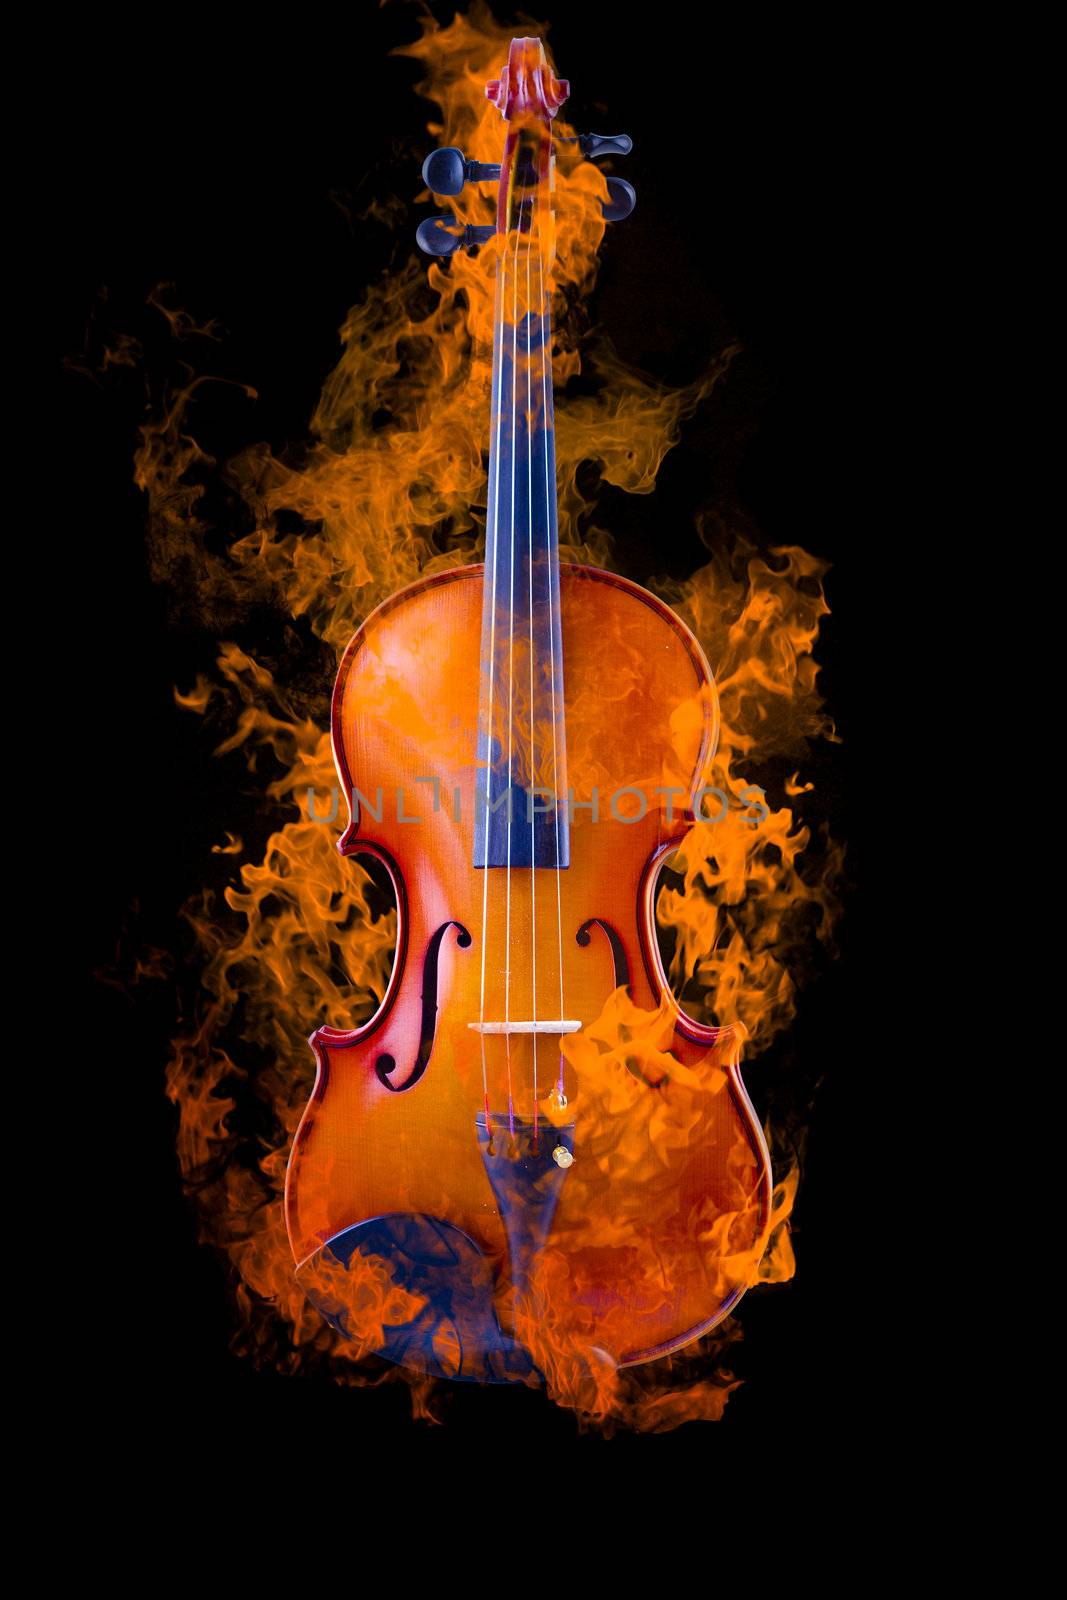 Burning violin by FernandoCortes